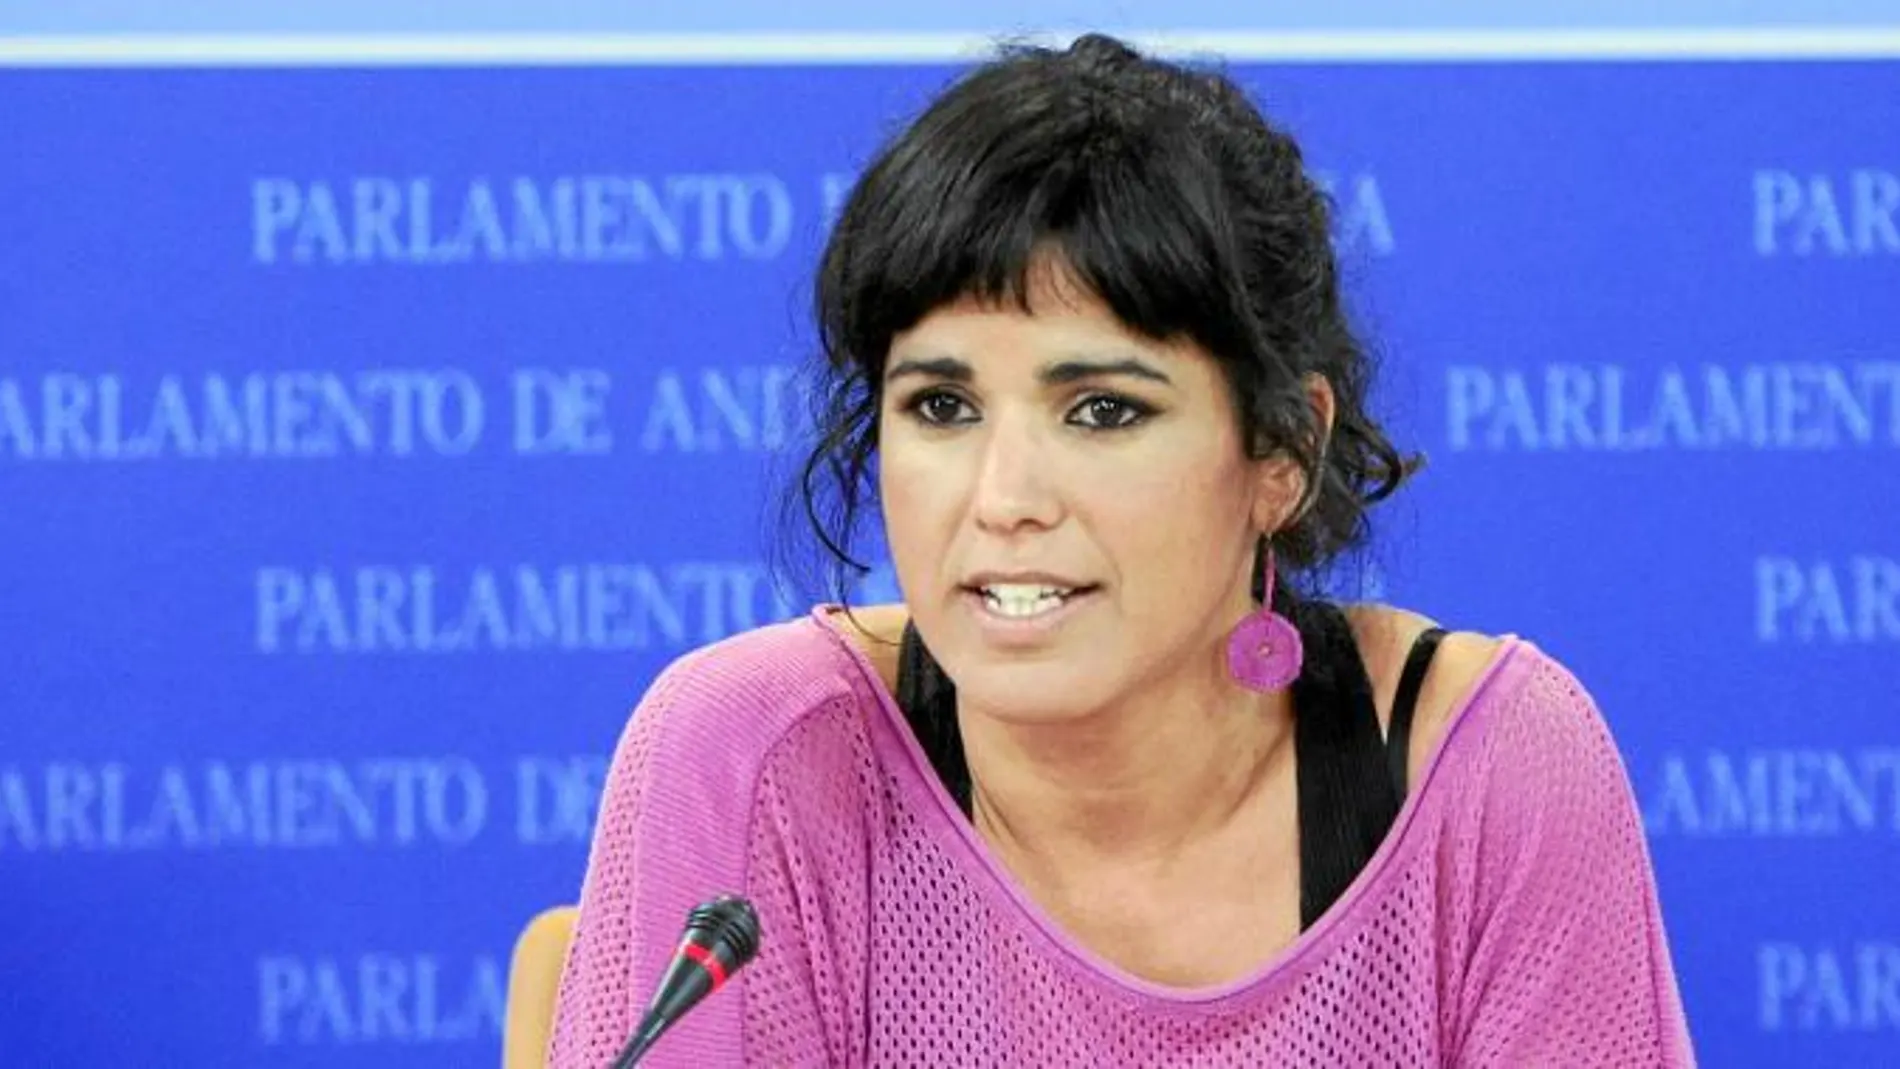 La secretaria general de Podemos en Andalucía, Teresa Rodríguez